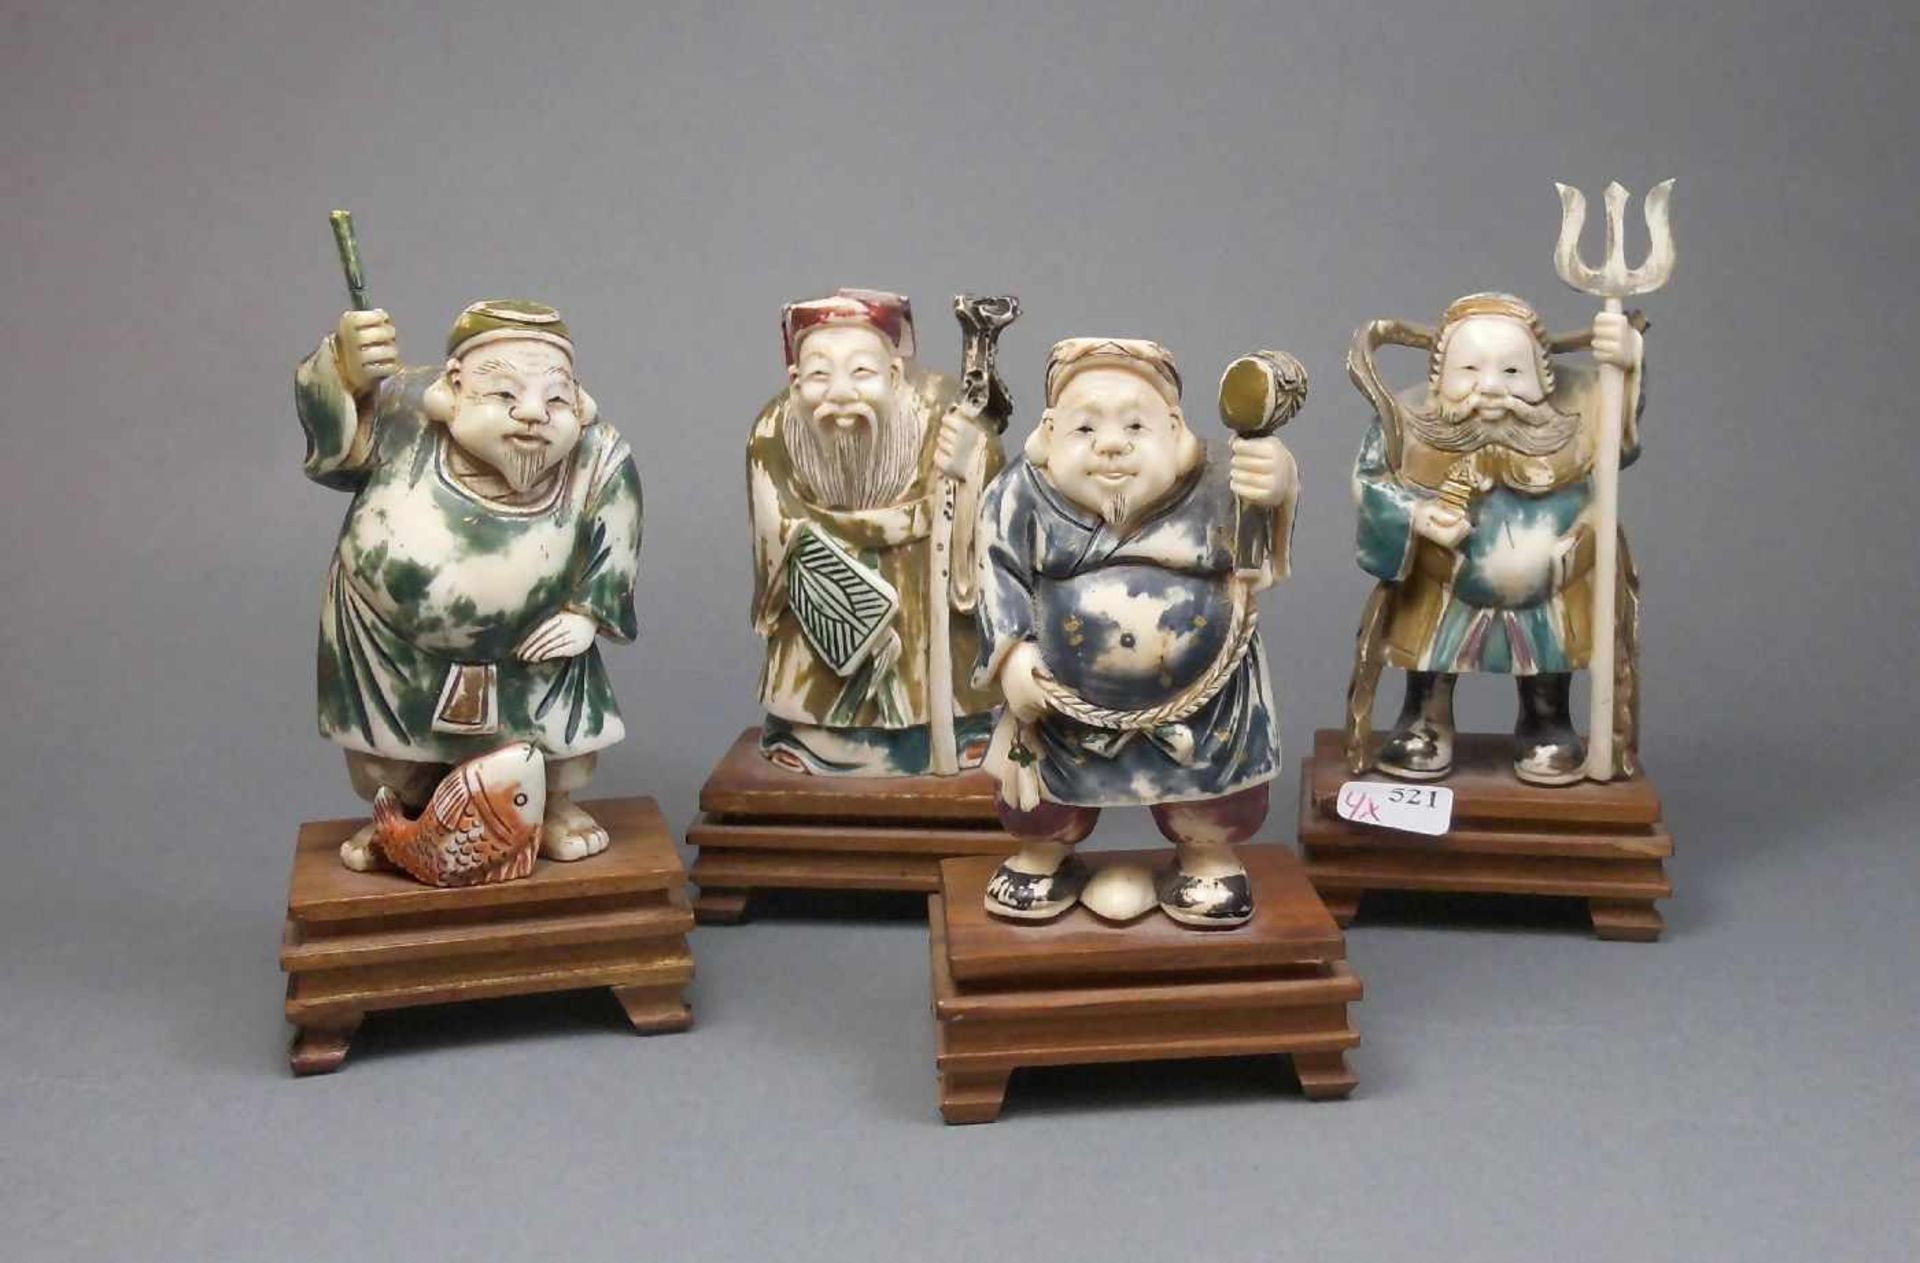 4 OKIMONO / ELFENBEINFIGUREN, Japan, Meiji-Periode, 19./20. Jh., Elfenbein und Holz, polychrom